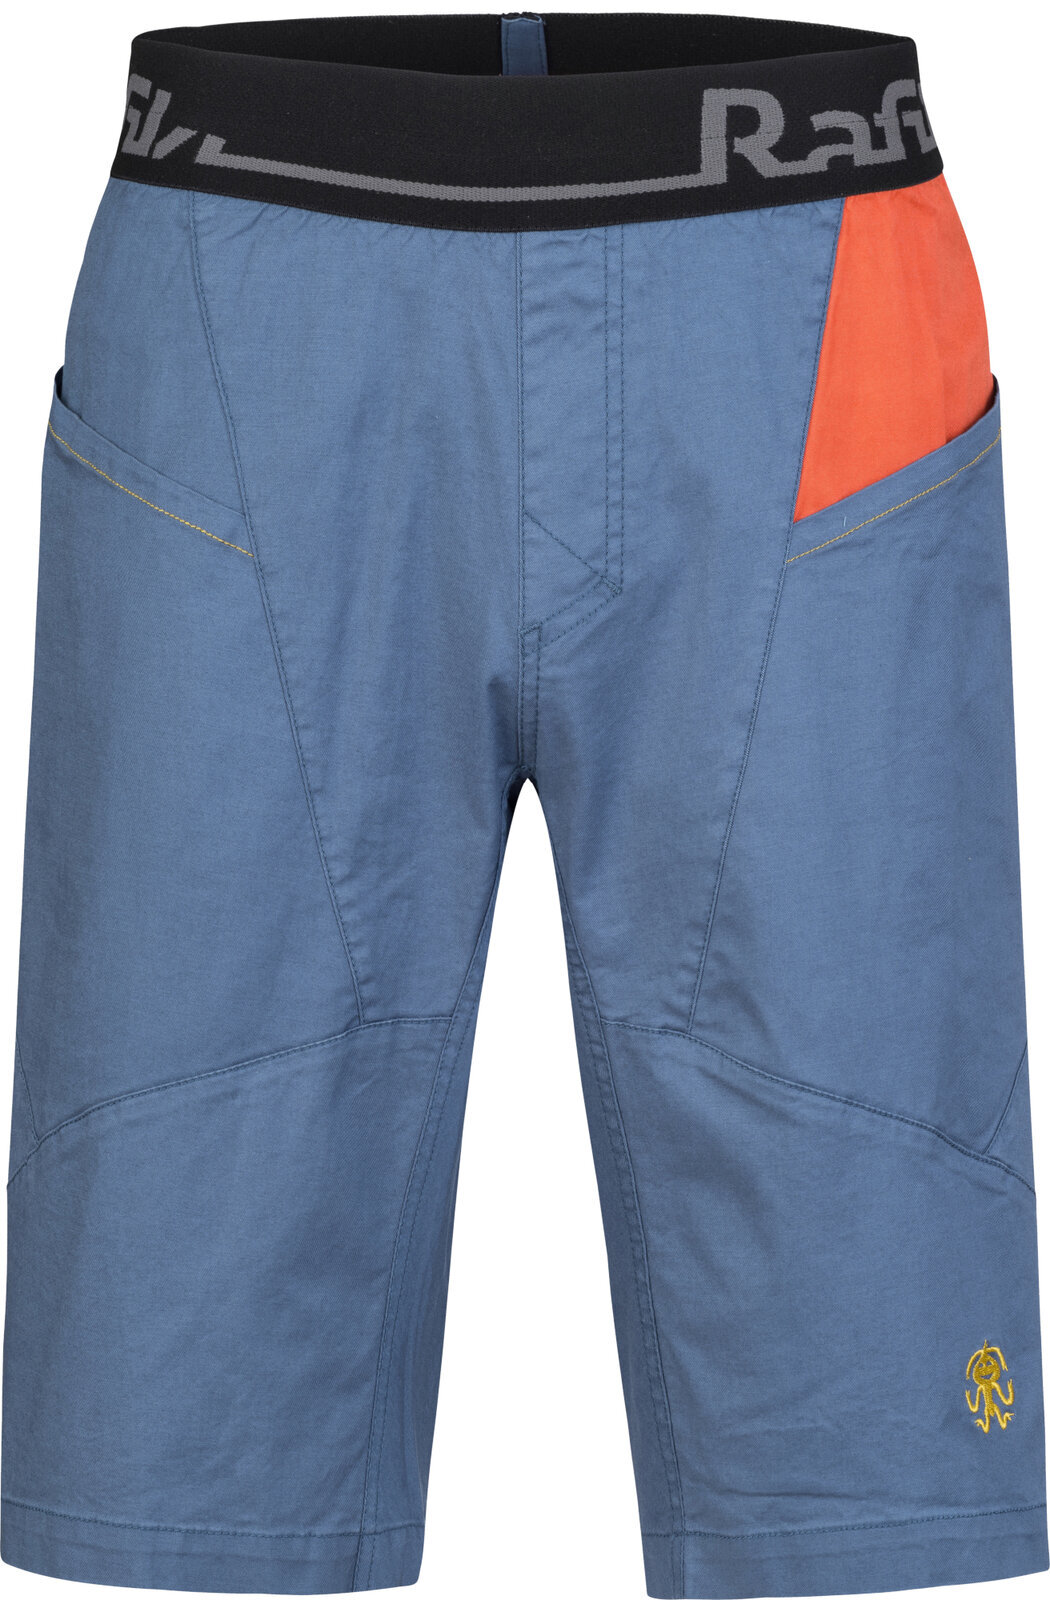 Outdoorové šortky Rafiki Megos Man Shorts Ensign Blue/Clay L Outdoorové šortky